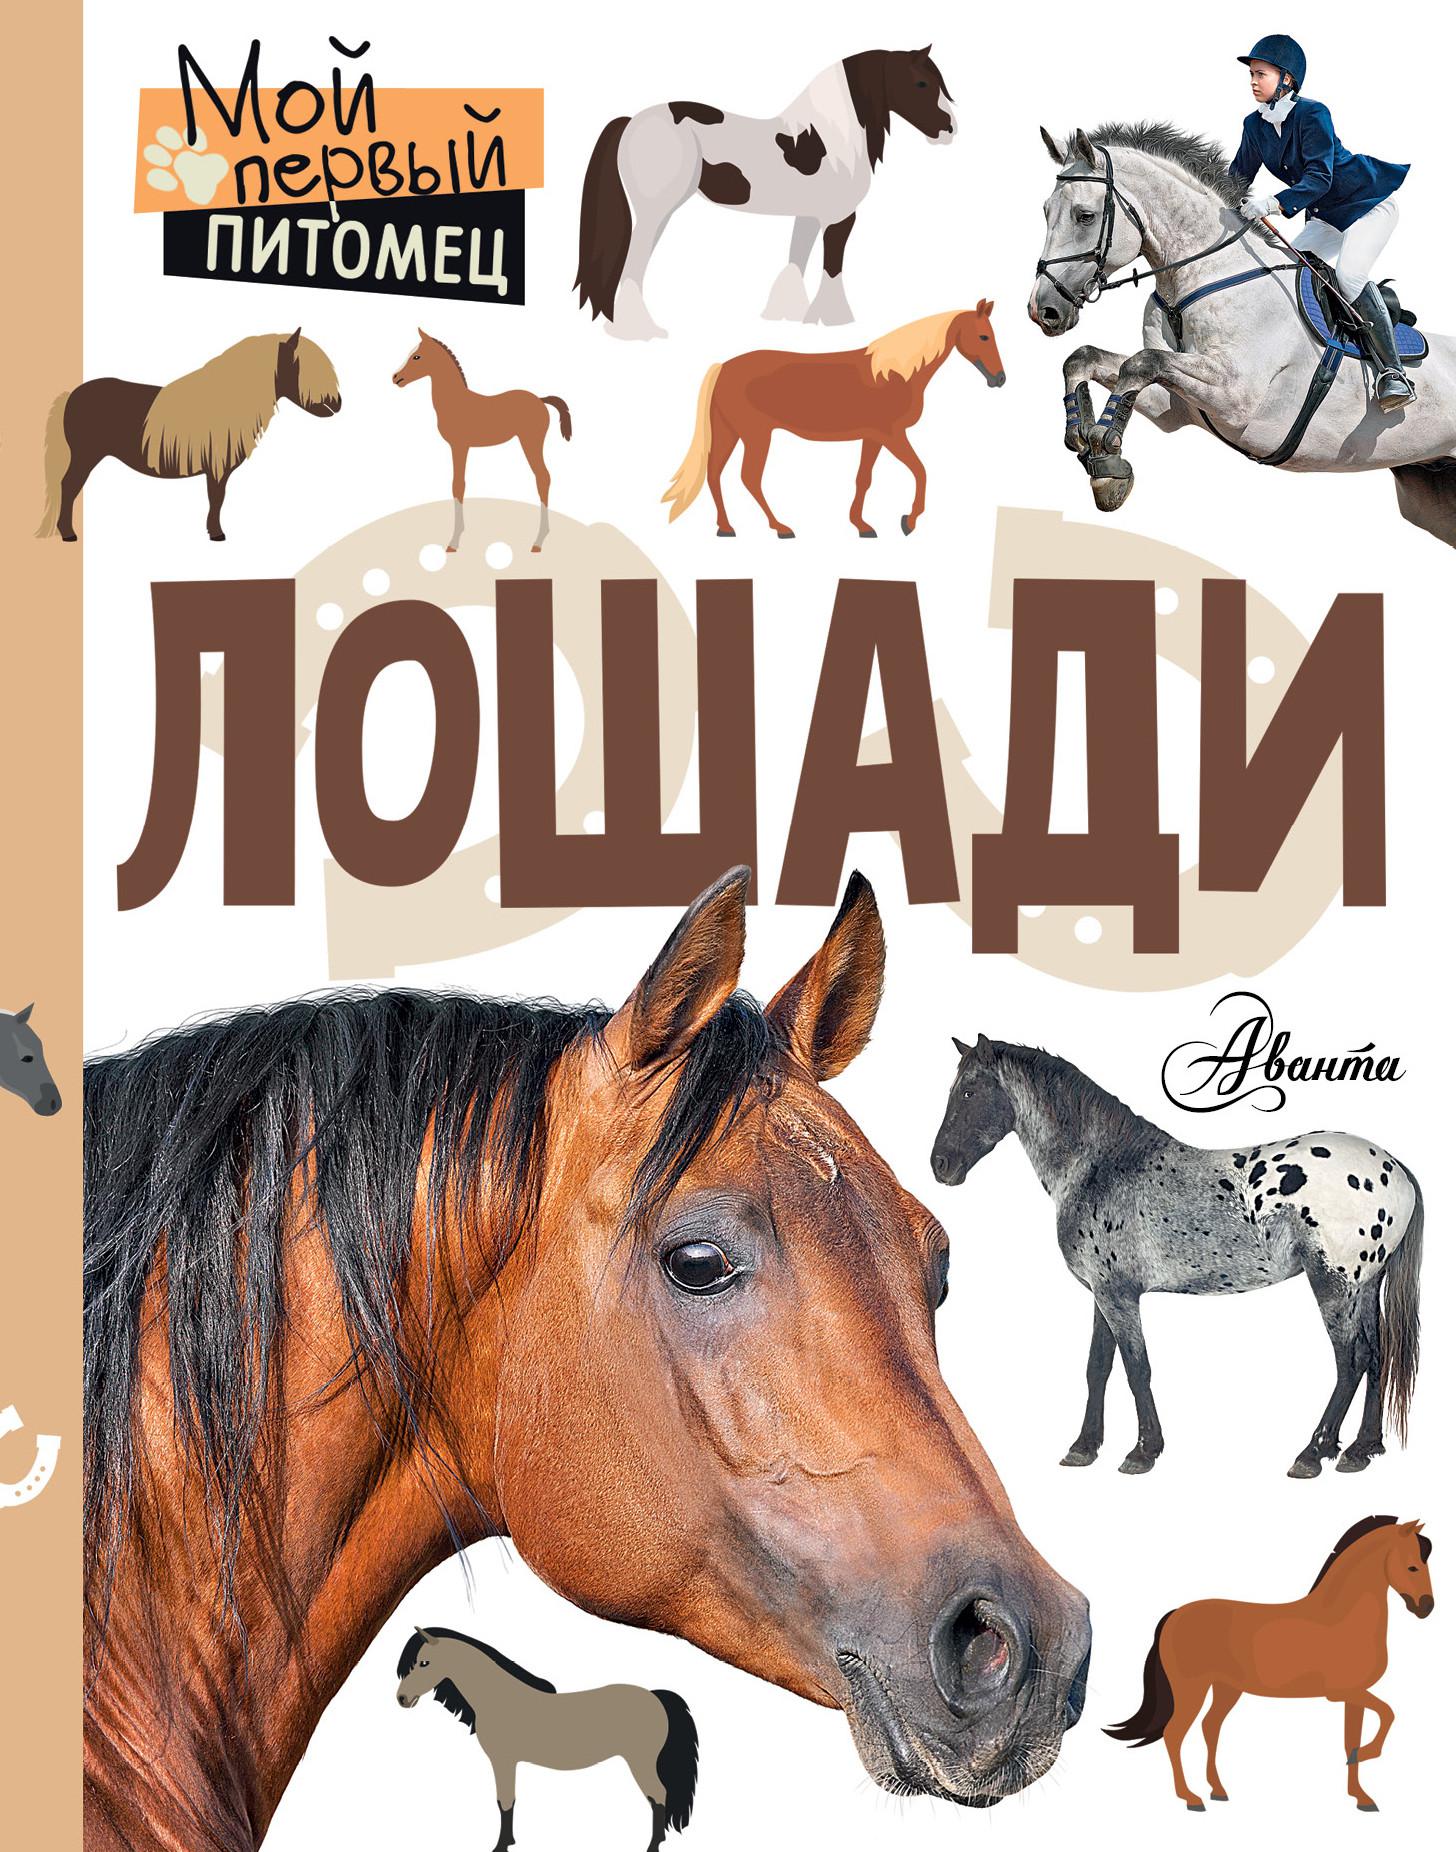 Купить книгу лошади. Книги про лошадей. Книги о лошадях для детей. Книги про лошадей Художественные.